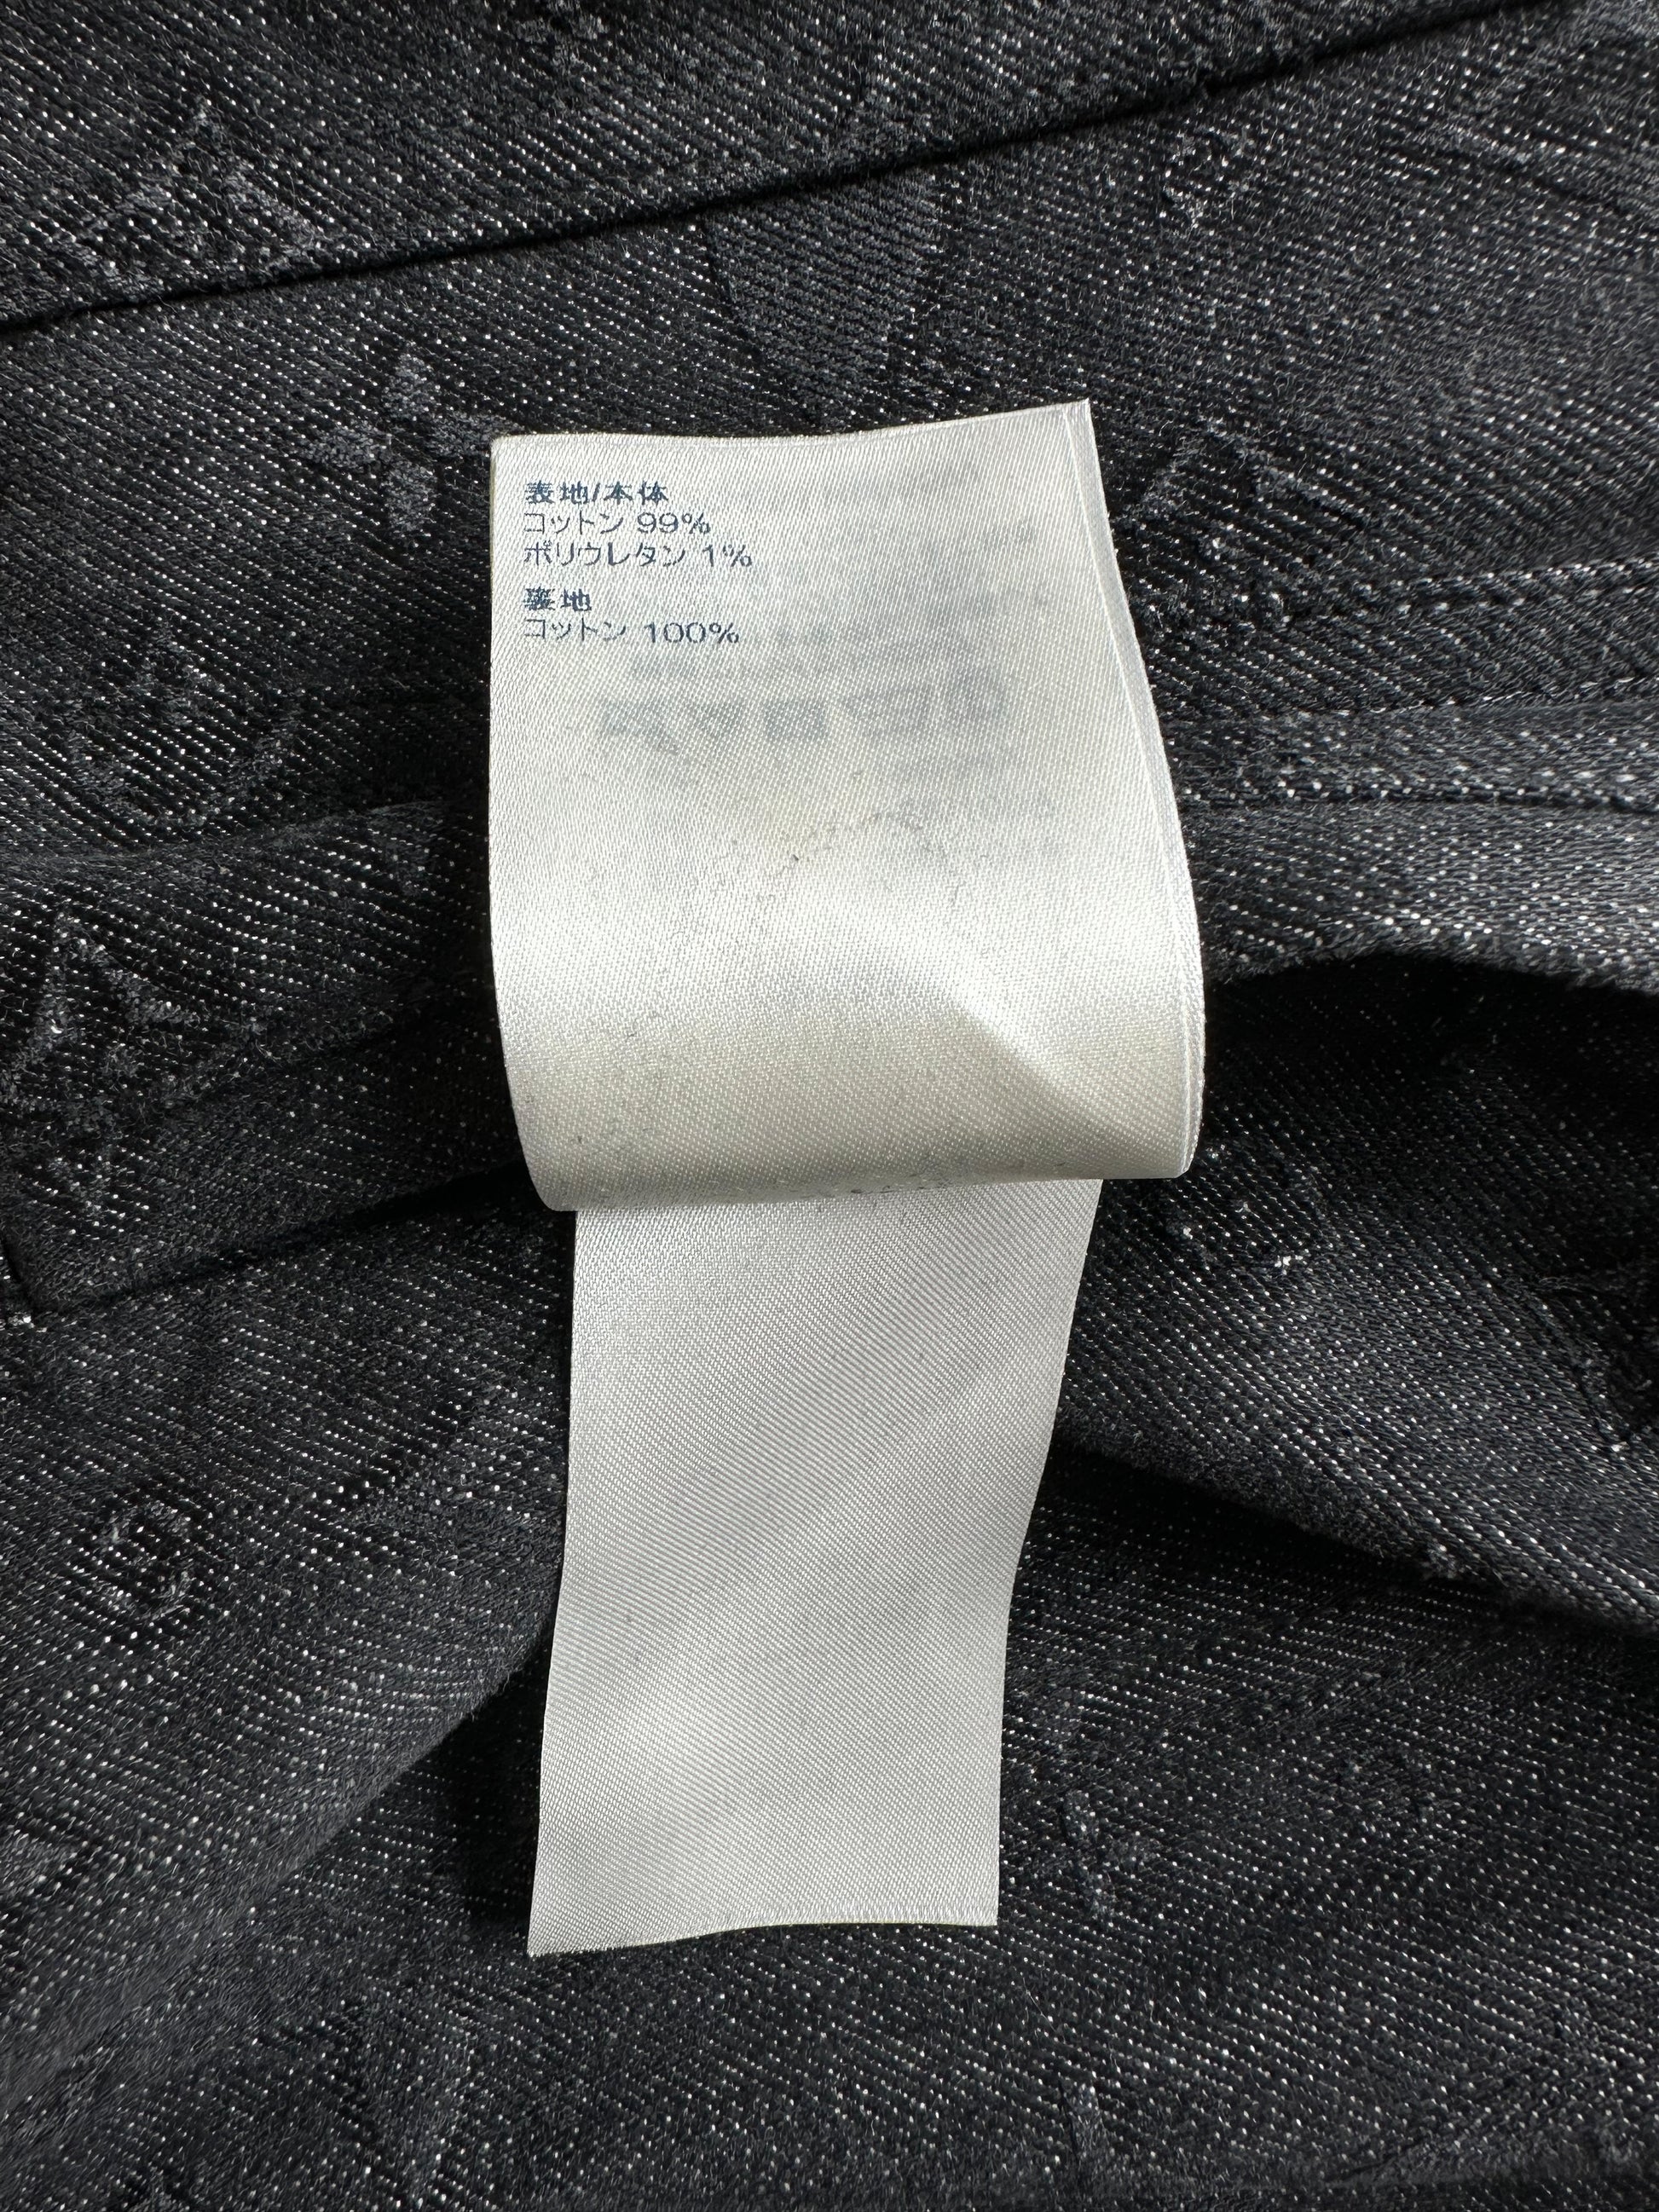 Dna Denim Jacket - Louis Vuitton ®  Black denim jacket, Louis vuitton,  Denim jacket